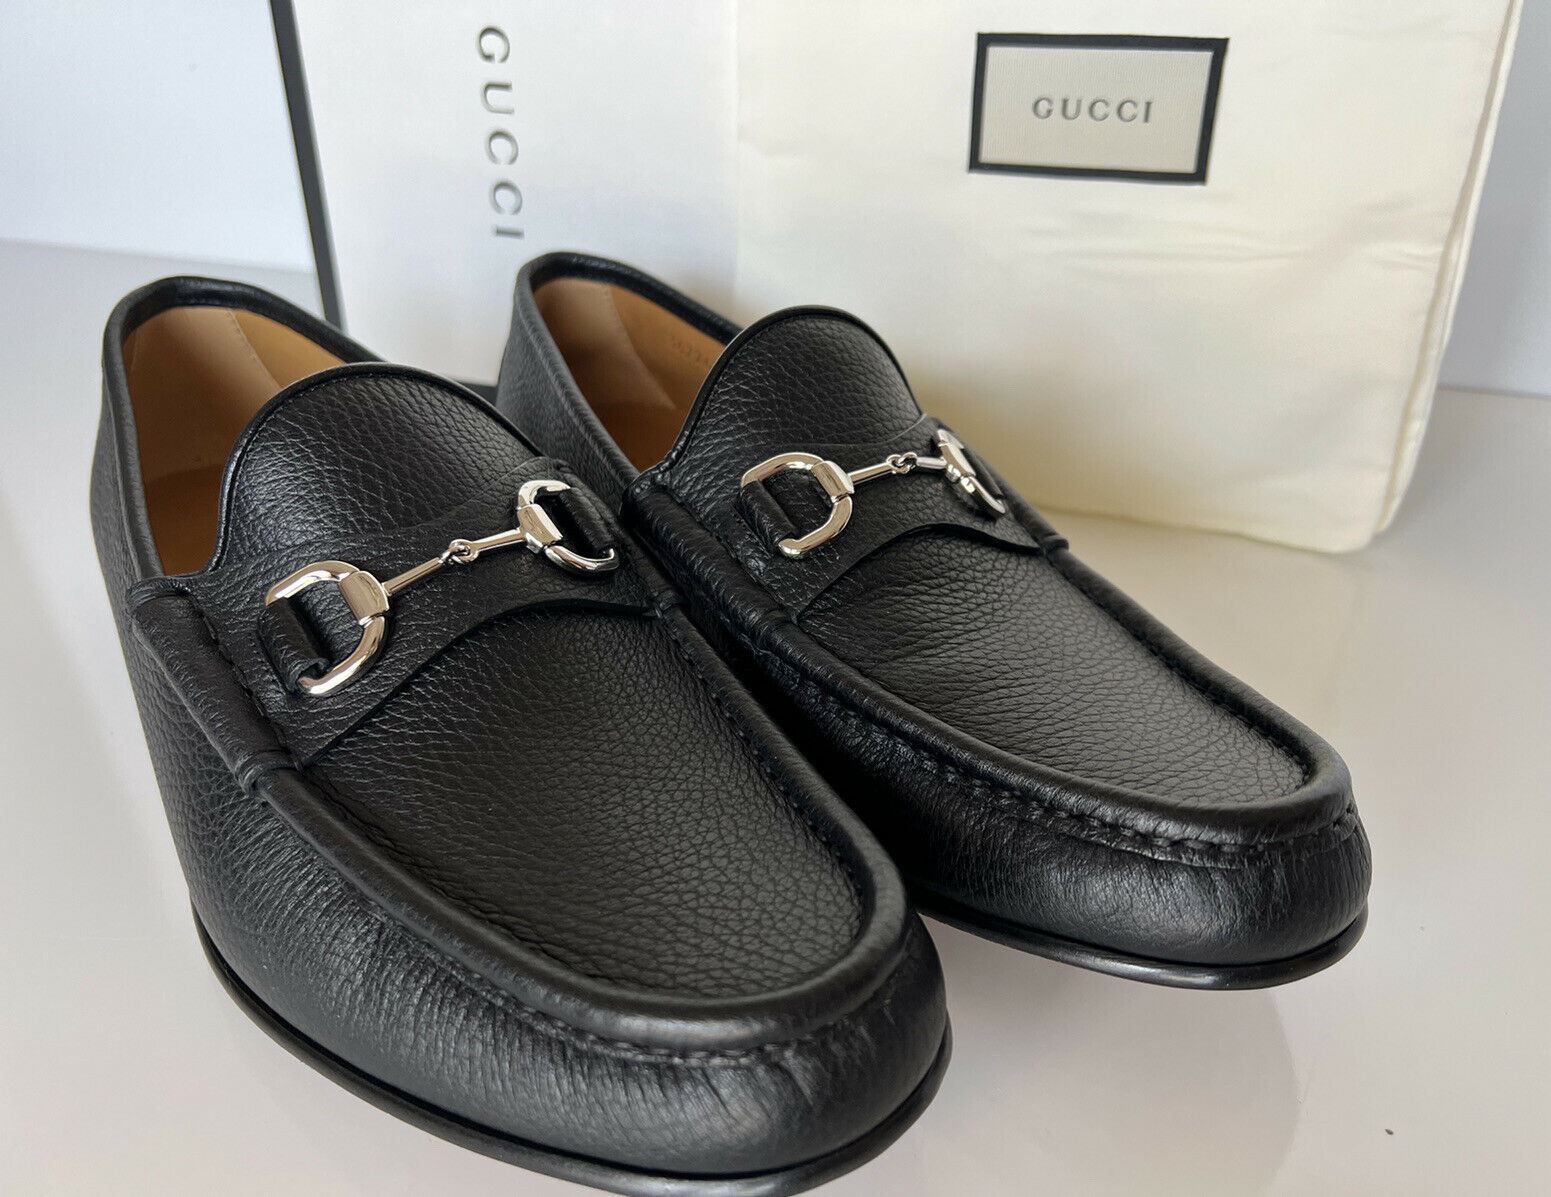 NIB Gucci Herren Horsebit Leder-Loafer-Schuhe Schwarz 10,5 US (Gucci 9,5) 367762 